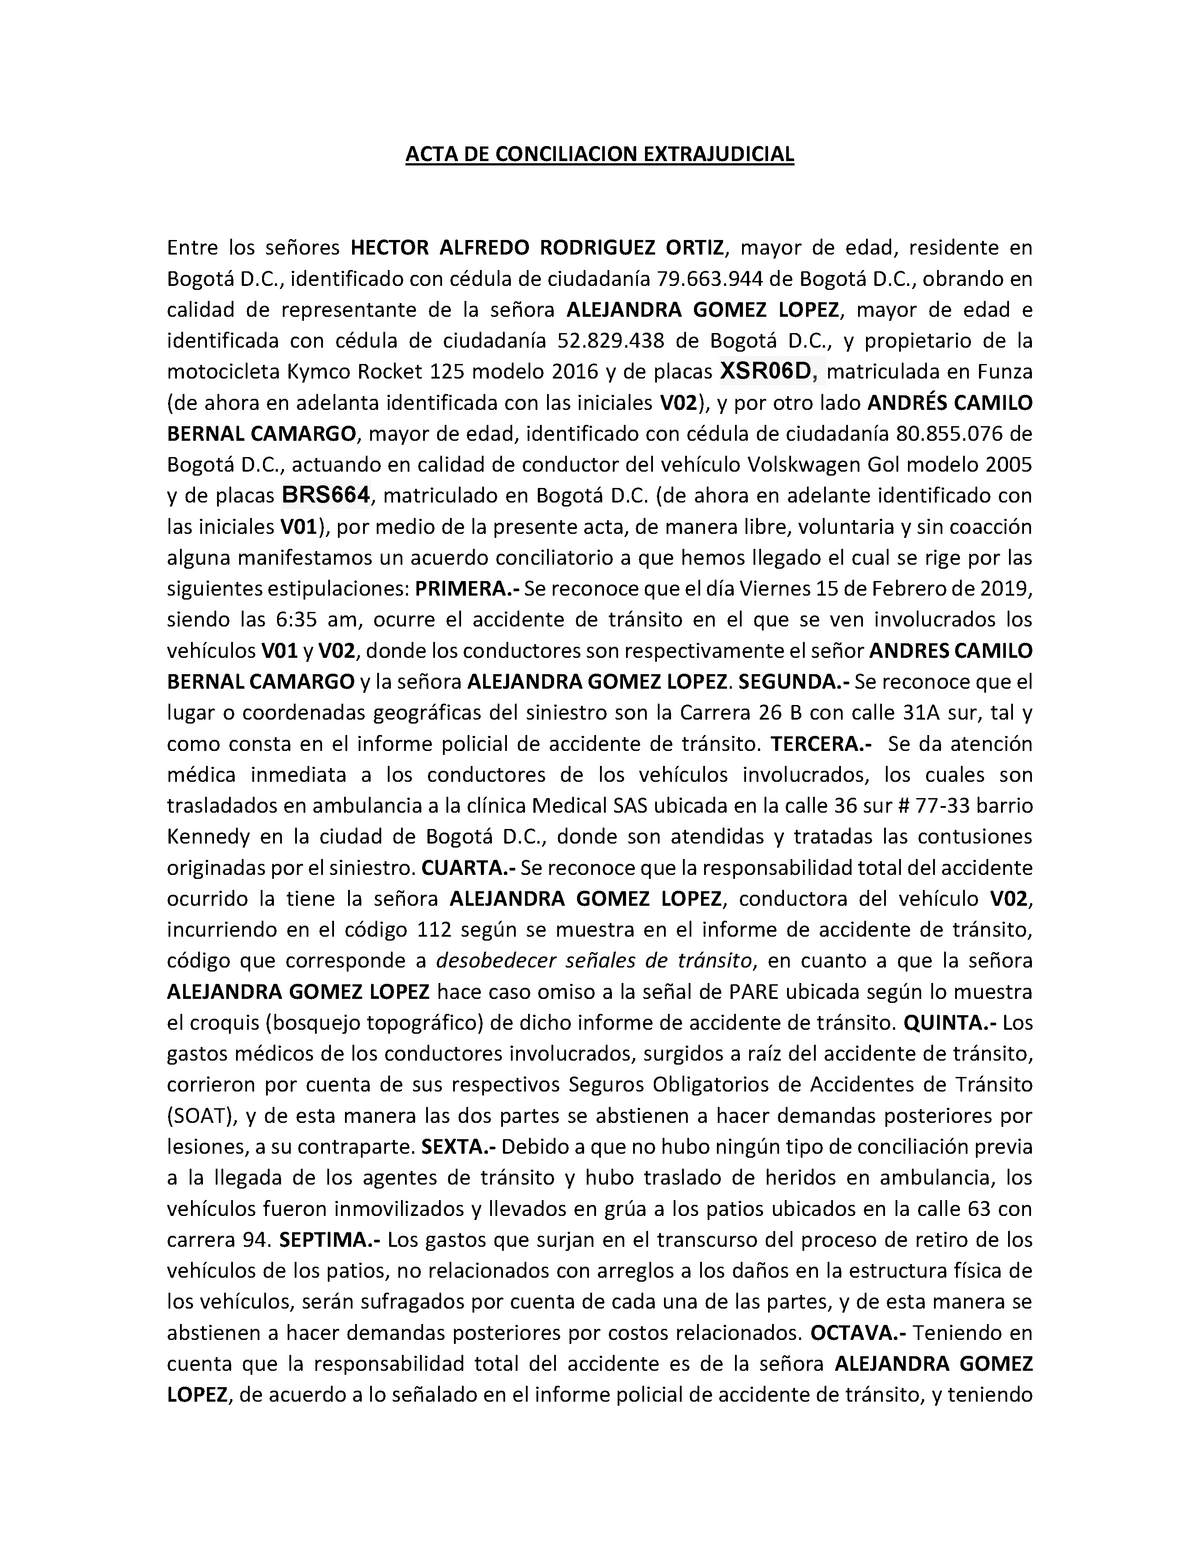 409322281 Acta de Conciliacion Extrajudicial 1 - ACTA DE CONCILIACION  EXTRAJUDICIAL Entre los - Studocu